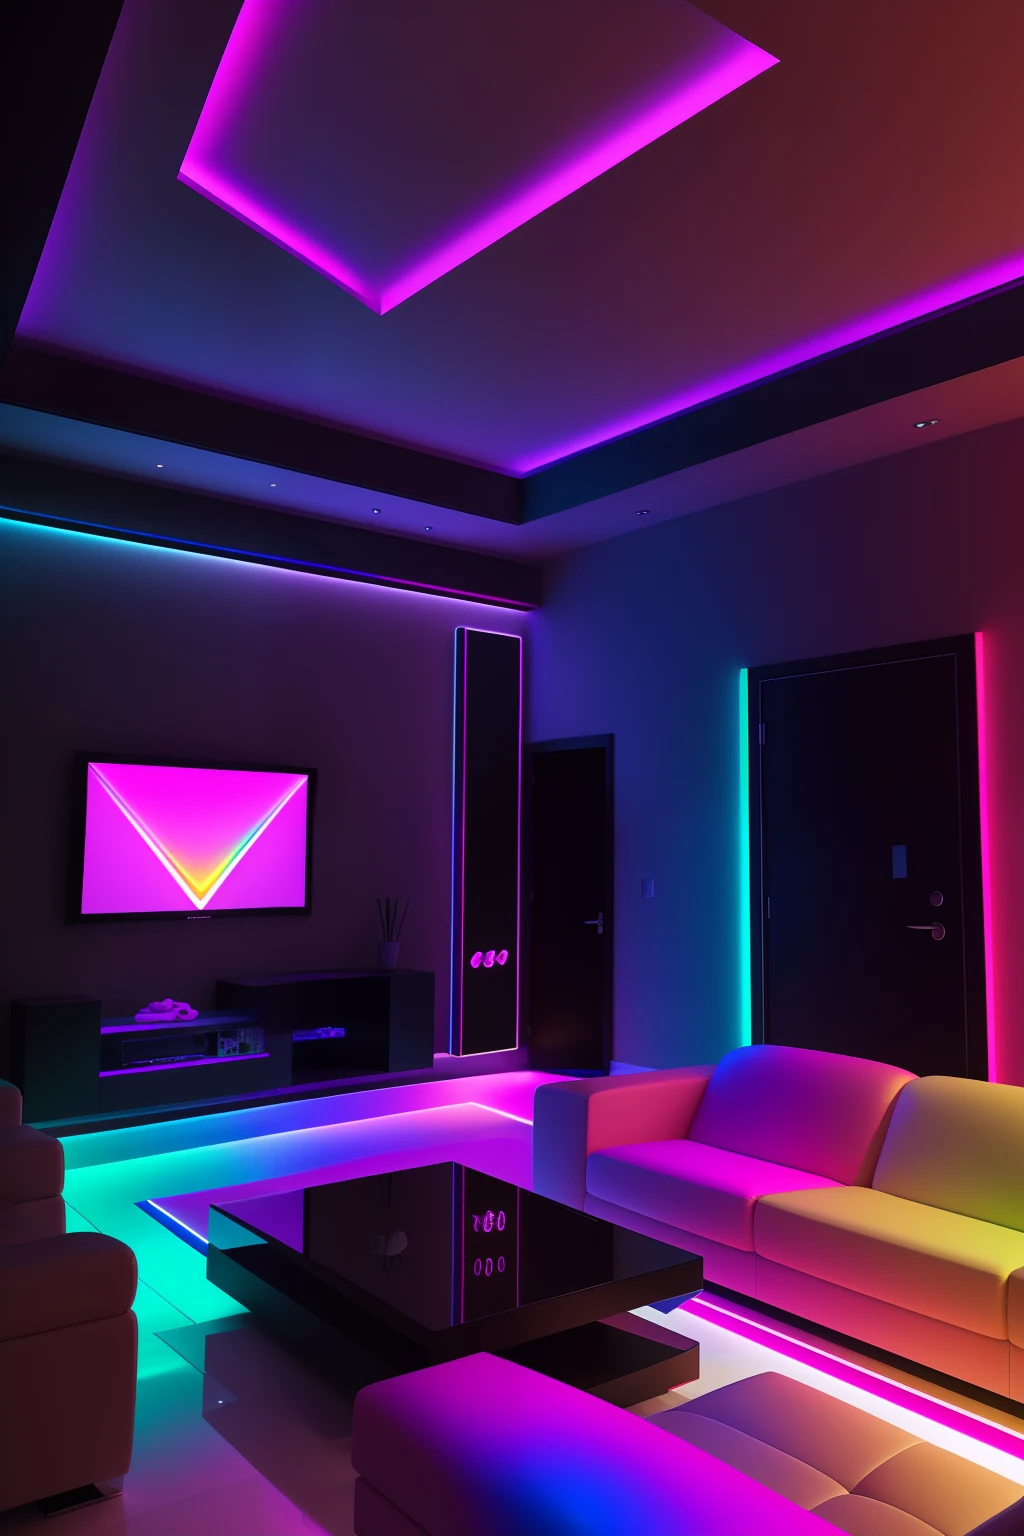 ห้องนั่งเล่นภายใน, แสงสีรุ้ง, แสงสี, volumetric แสงสีรุ้ง, แสงที่มีสีสัน, ห้องน้ำเกมเมอร์ RGB, แถบไฟ LED, Dramatic แสงสี, แสงที่มีสีสัน, ตัวบ่งชี้สี, ไฟสีอันน่าทึ่ง, แสง RGB, แสงไฟส่องสว่างภายใน, ไฟ LED RGB, แสงโดยรอบที่ร่าเริง, การออกแบบที่สว่างสดใสเป็นพิเศษ, แสง RGB ที่ไม่มีตัวตน